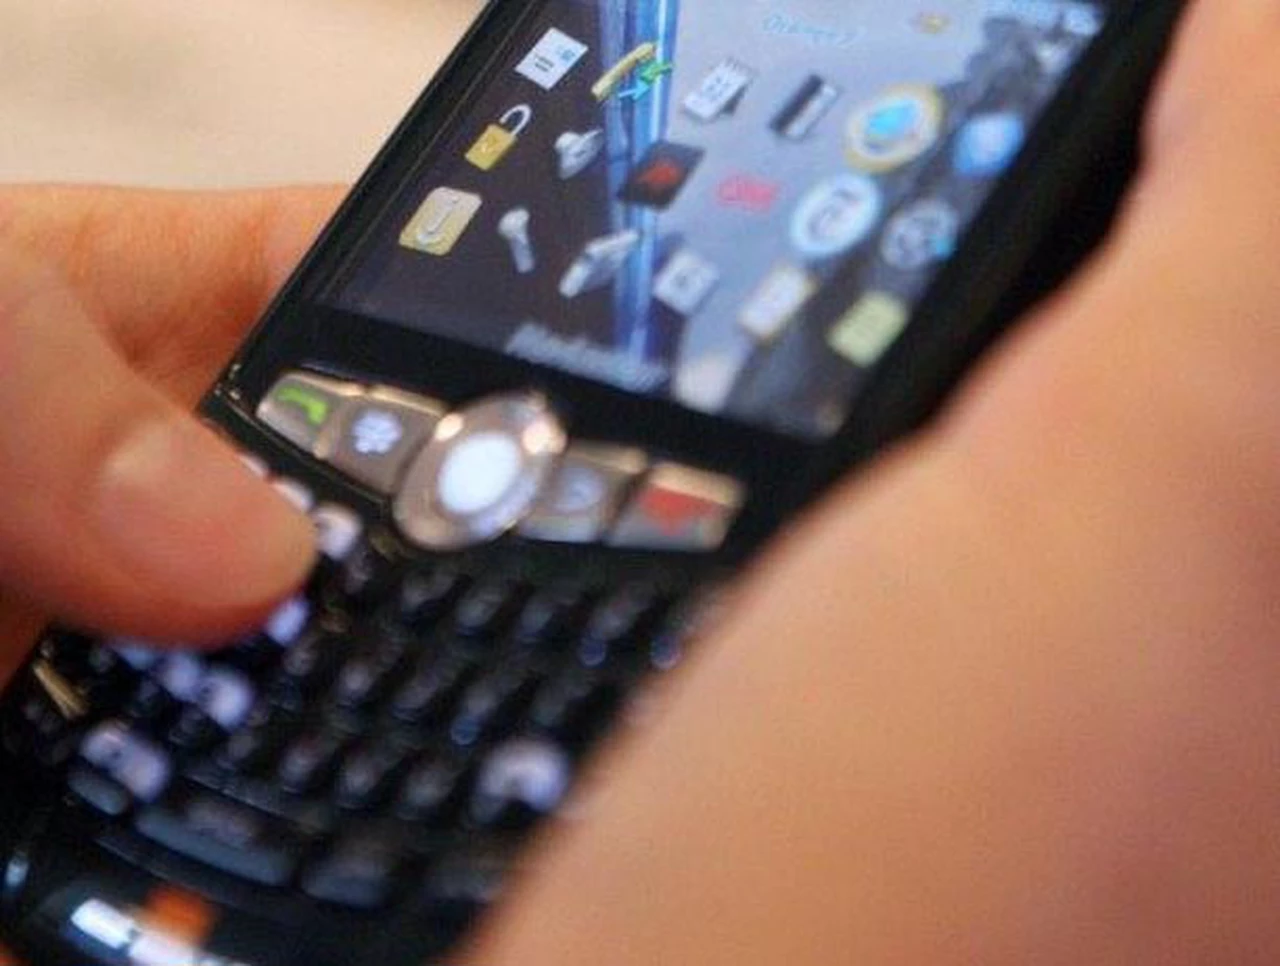 Blackberry inaugurará un laboratorio de computación móvil en la UBA